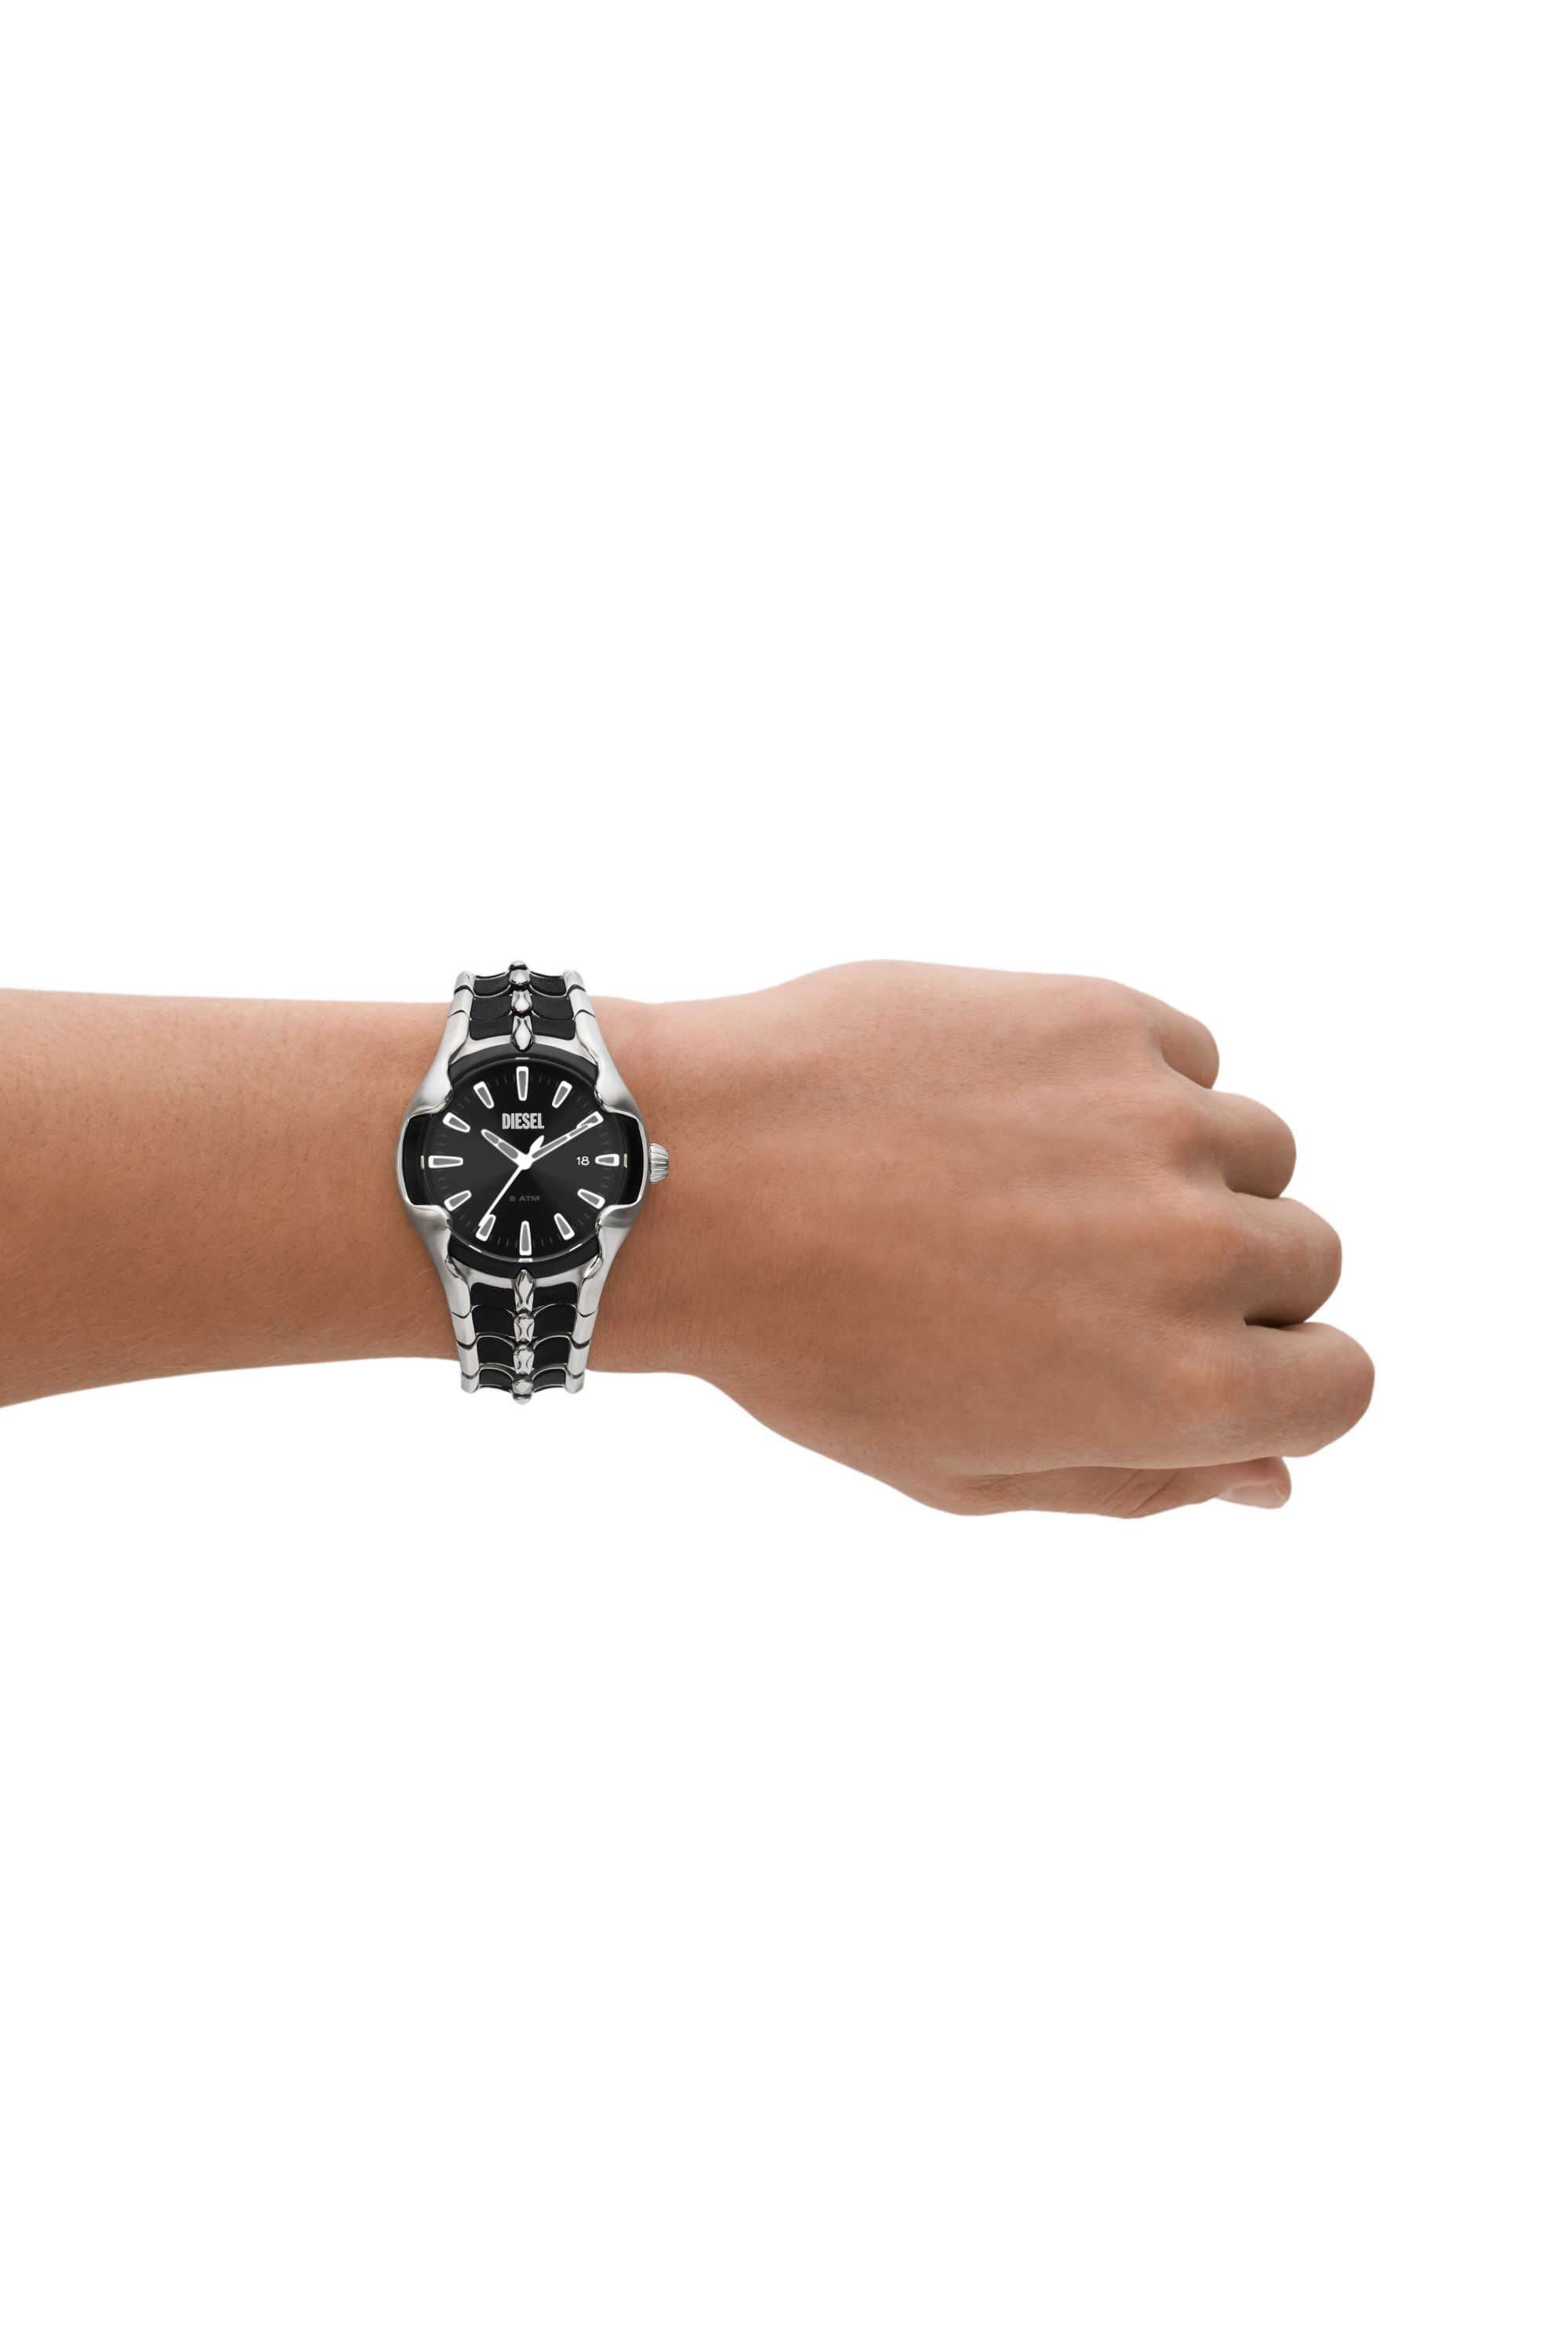 Diesel Limited Edition Watch | Vert DZ2183 Three-Hand Date Men\'s